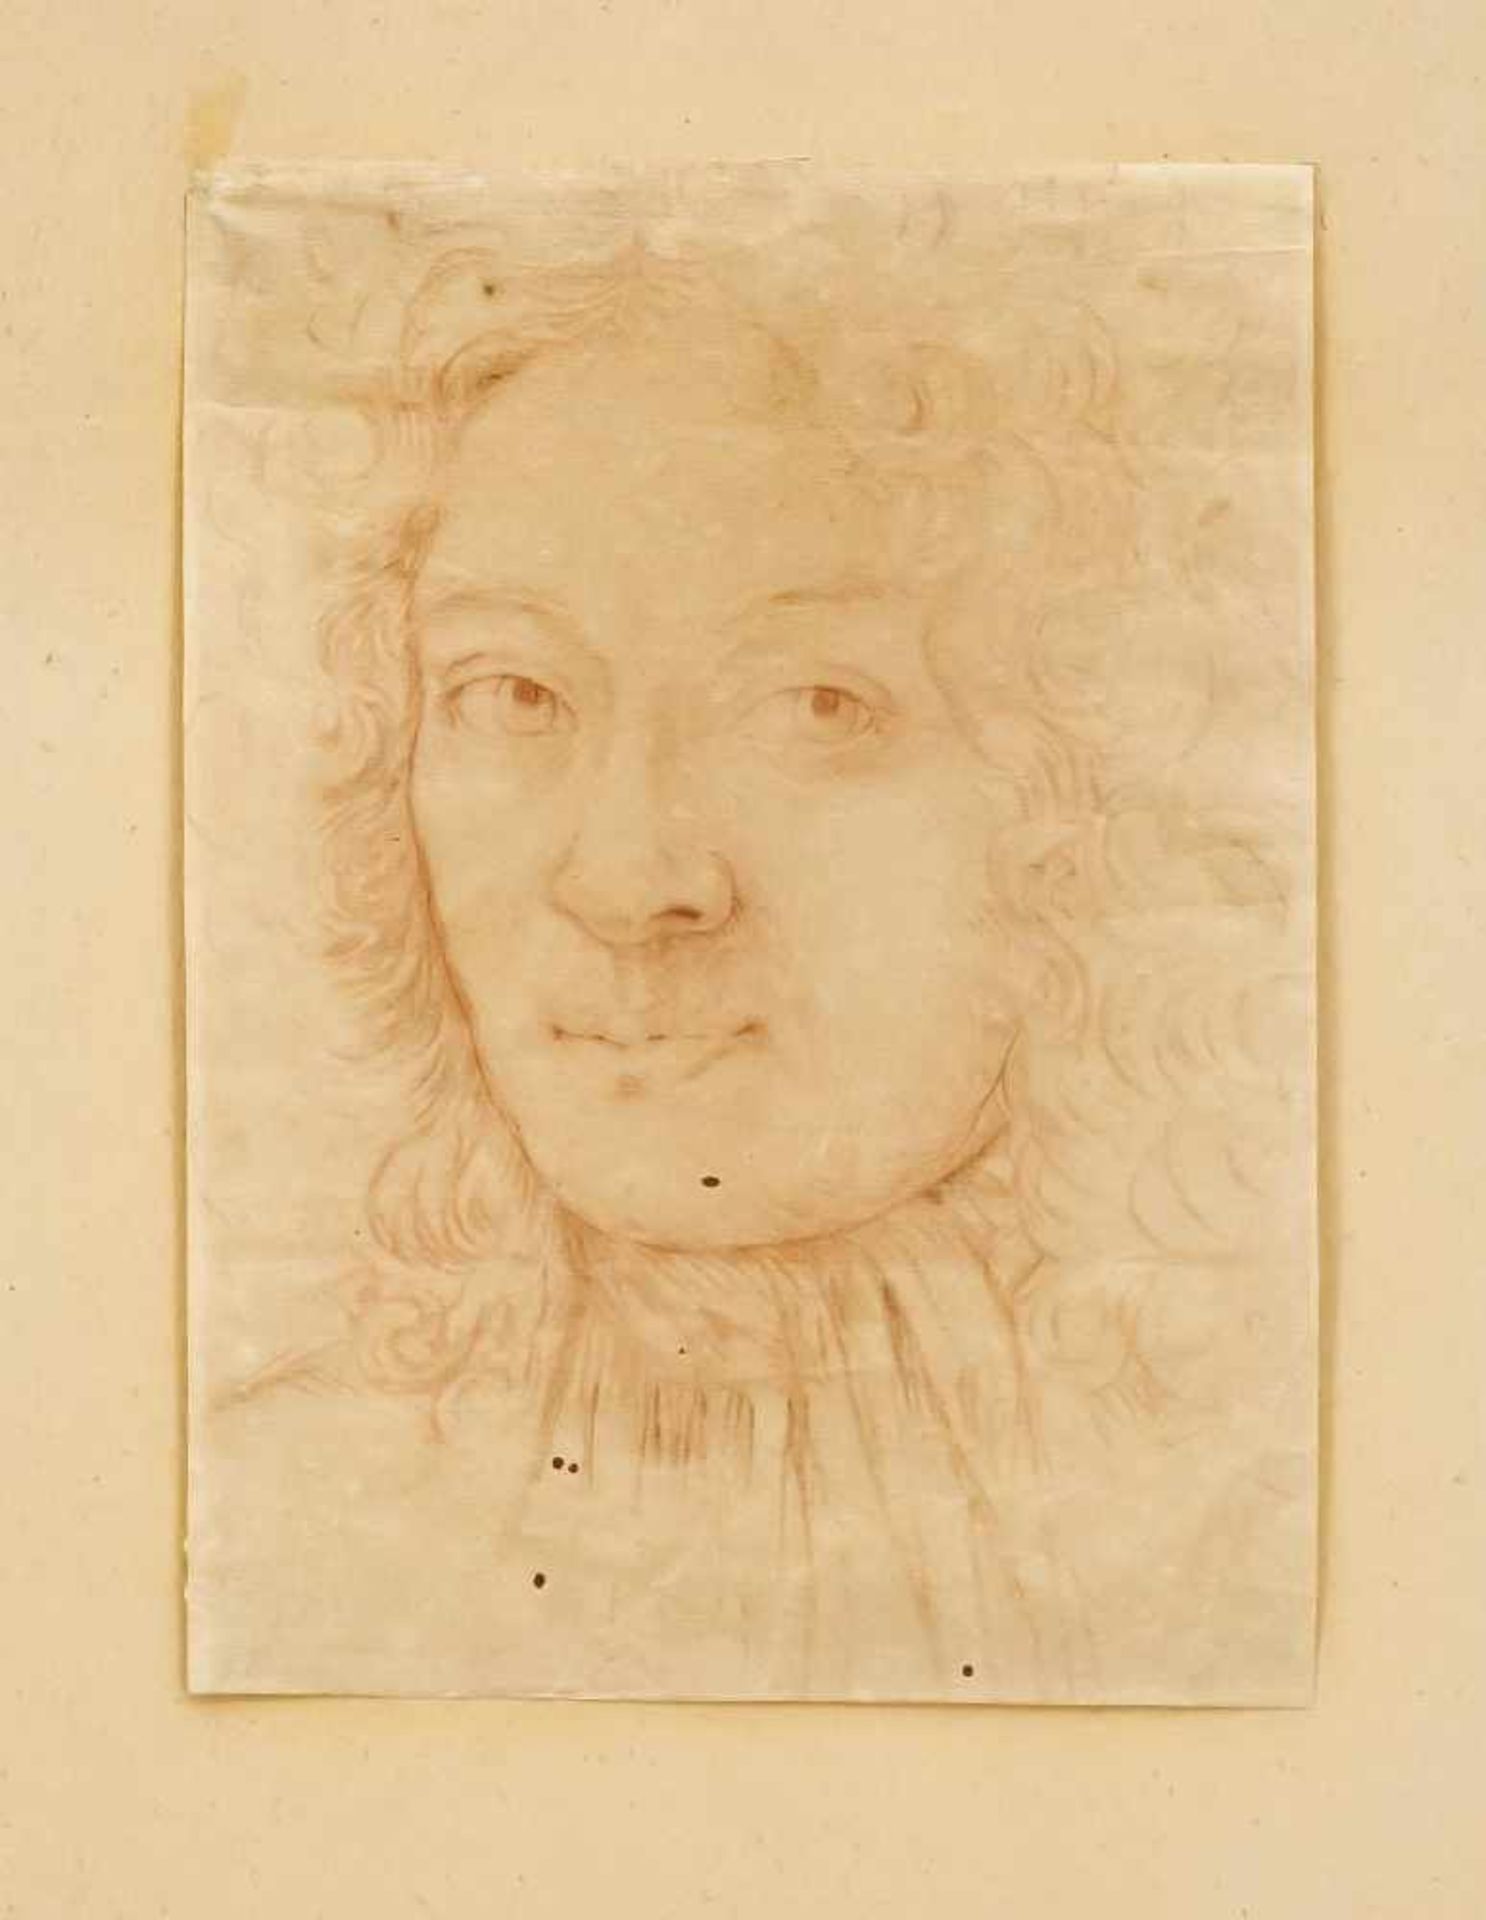 Daniel Dumonstier (1574-1646) (attrib.), Bildnis eines jungen Mannes mit längerem,gelockten Haar,